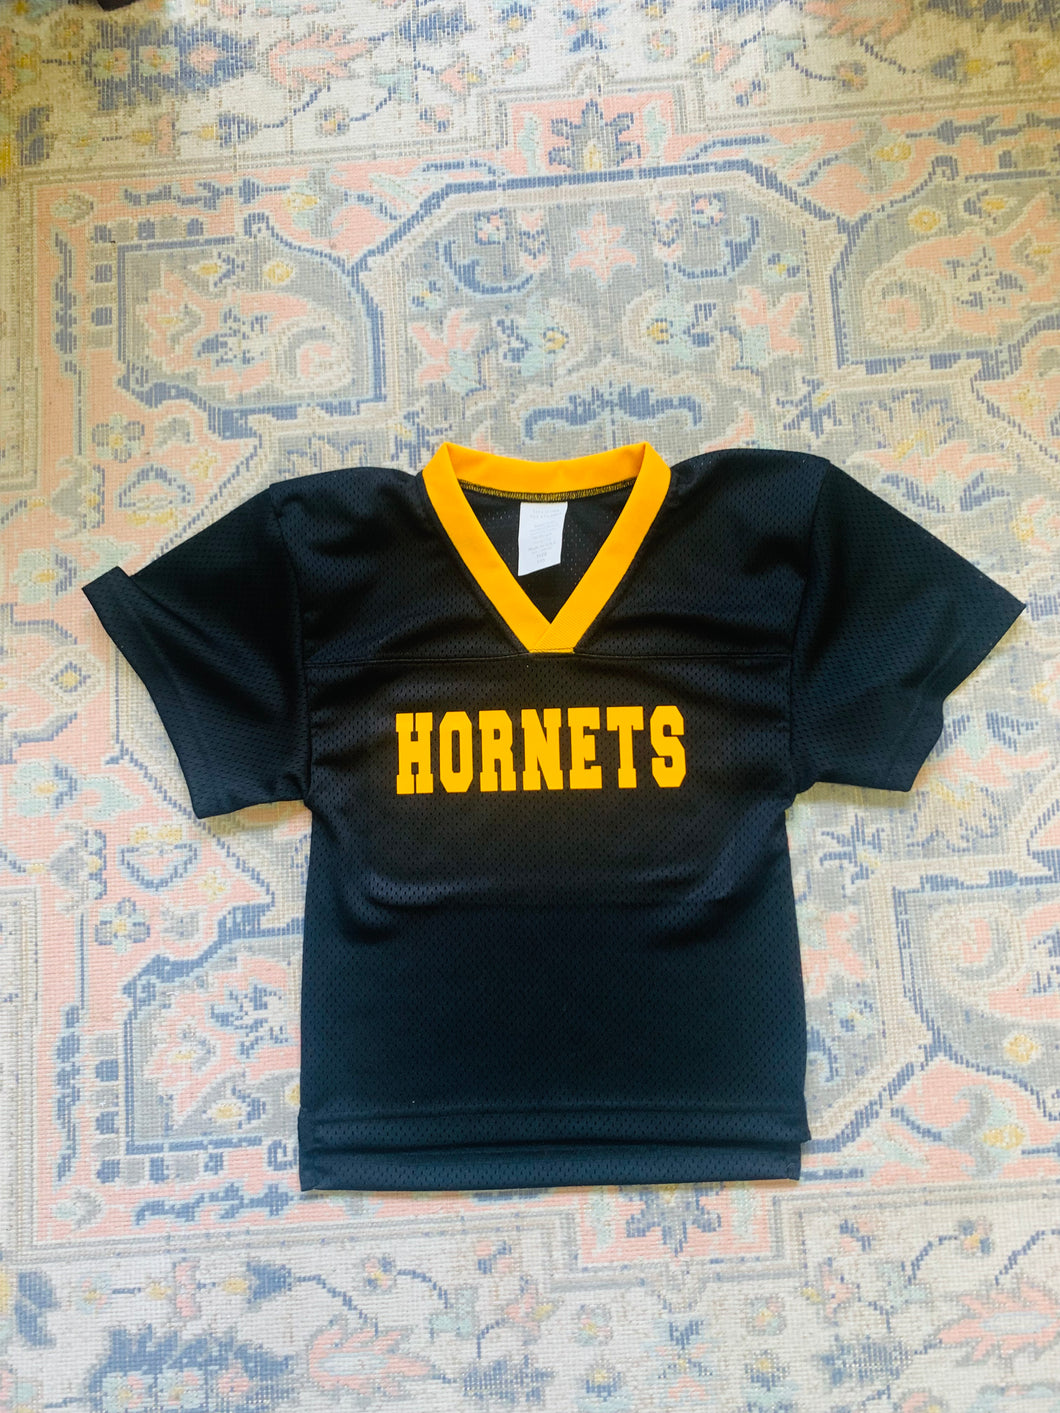 Hornets Football Jersey